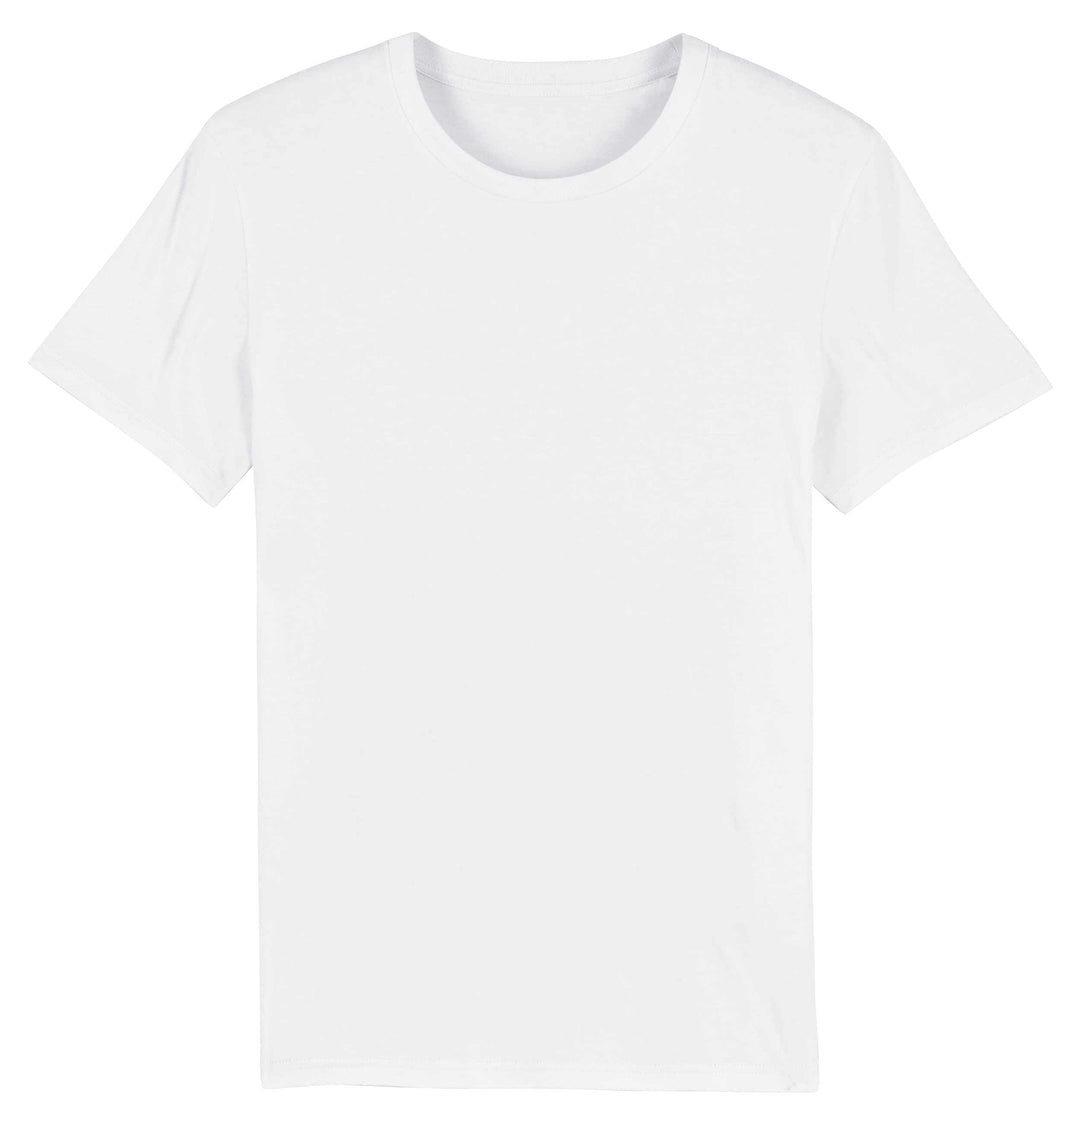 Massgeschneidertes T-Shirt UNISEX V-Ausschnitt